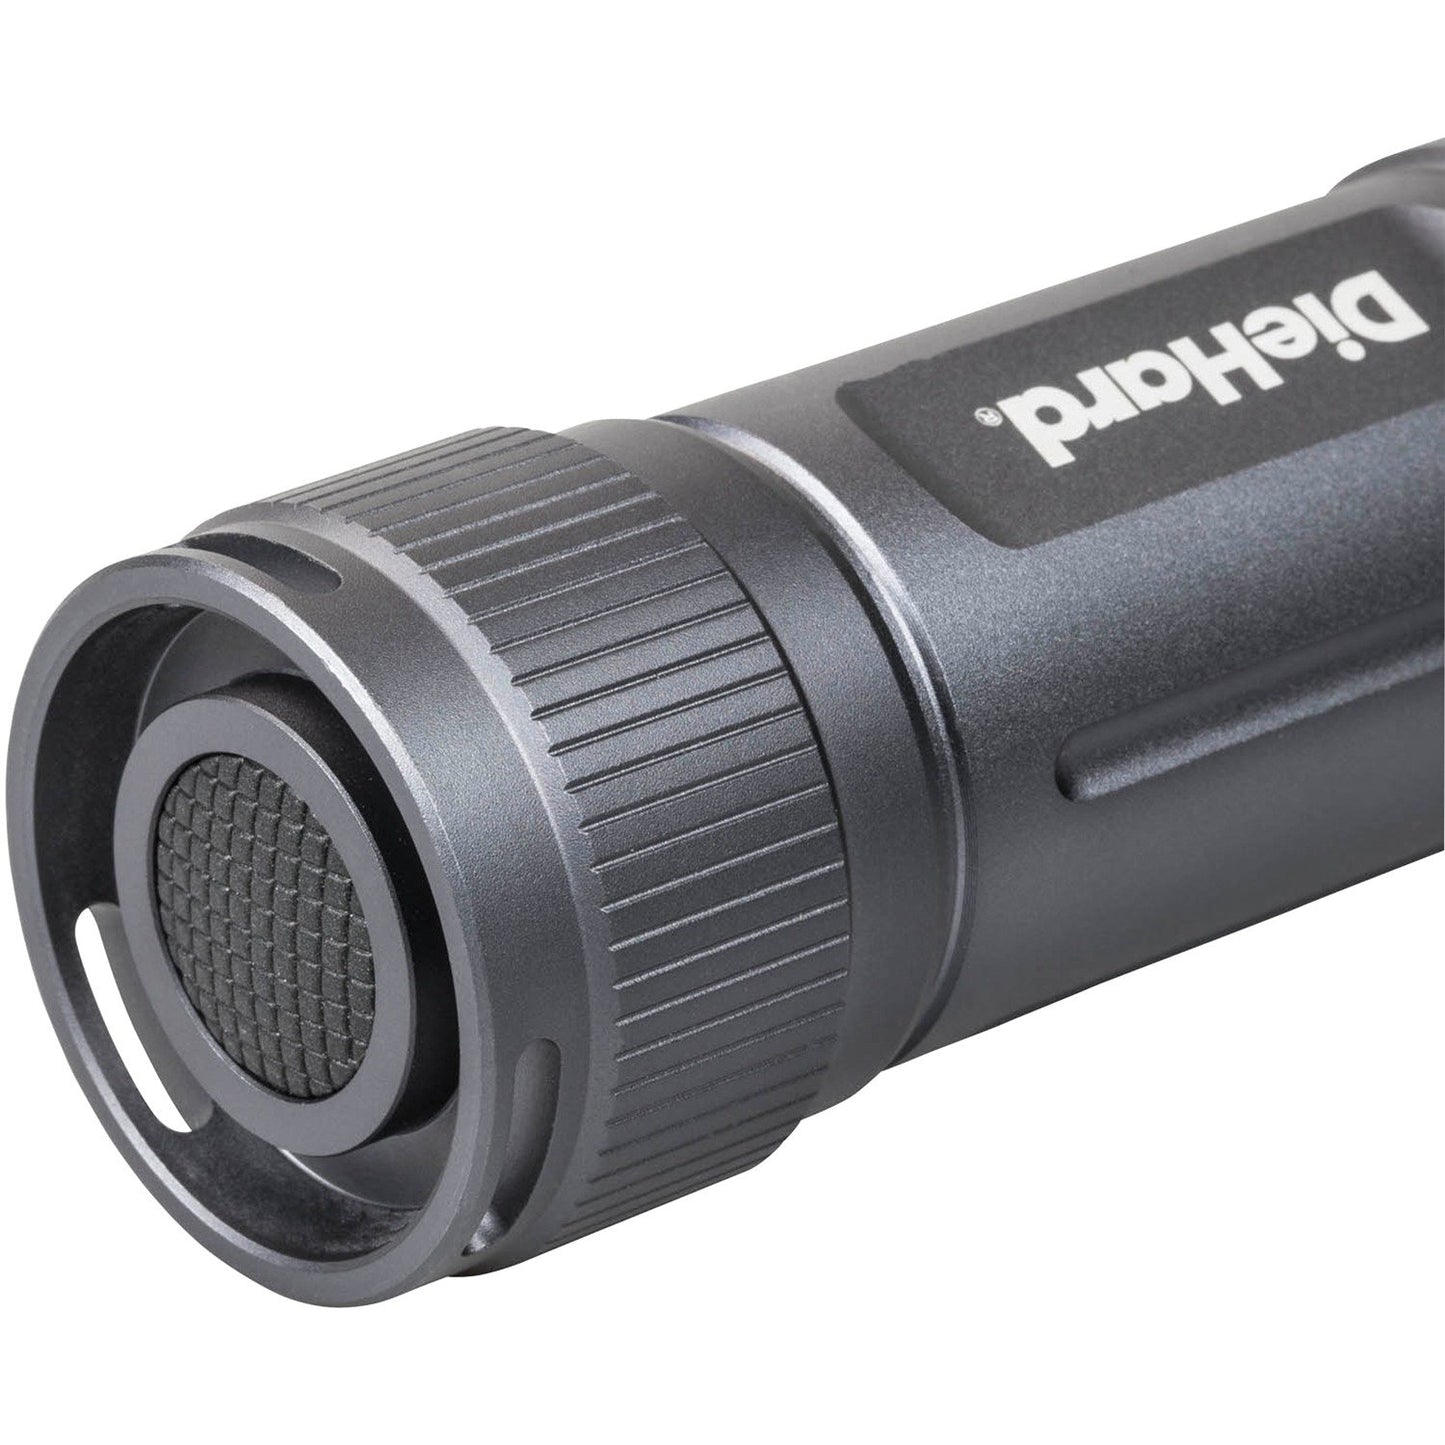 Diehard 41-6121 Twist Focus Flashlight (600-Lumen)